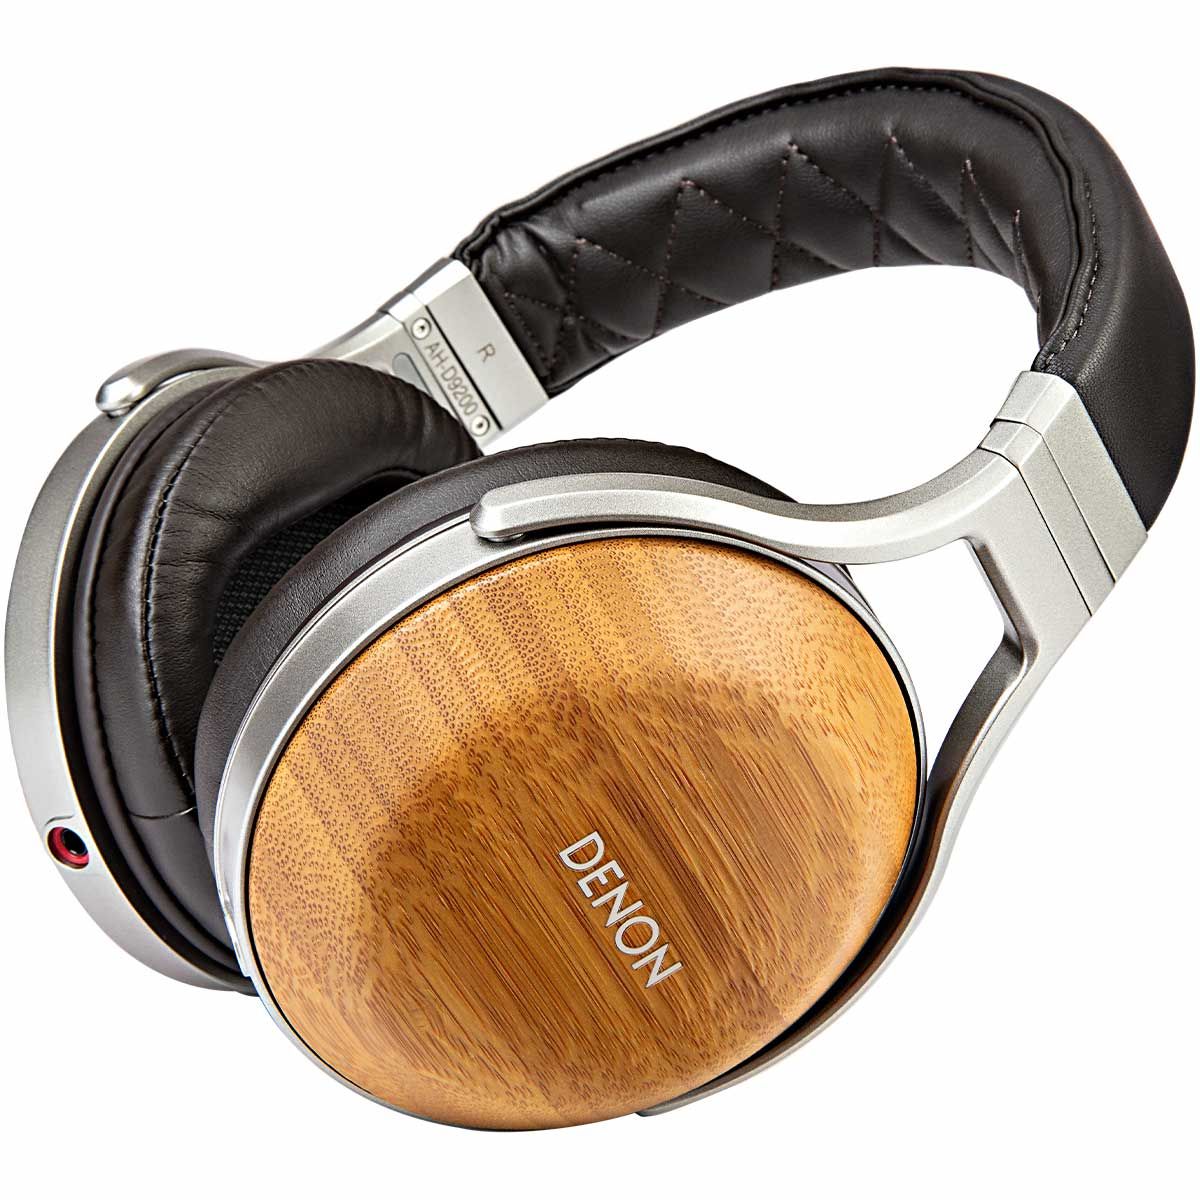 Denon AH-D9200 Bamboo Over-Ear Premium Headphones | Audio Advice